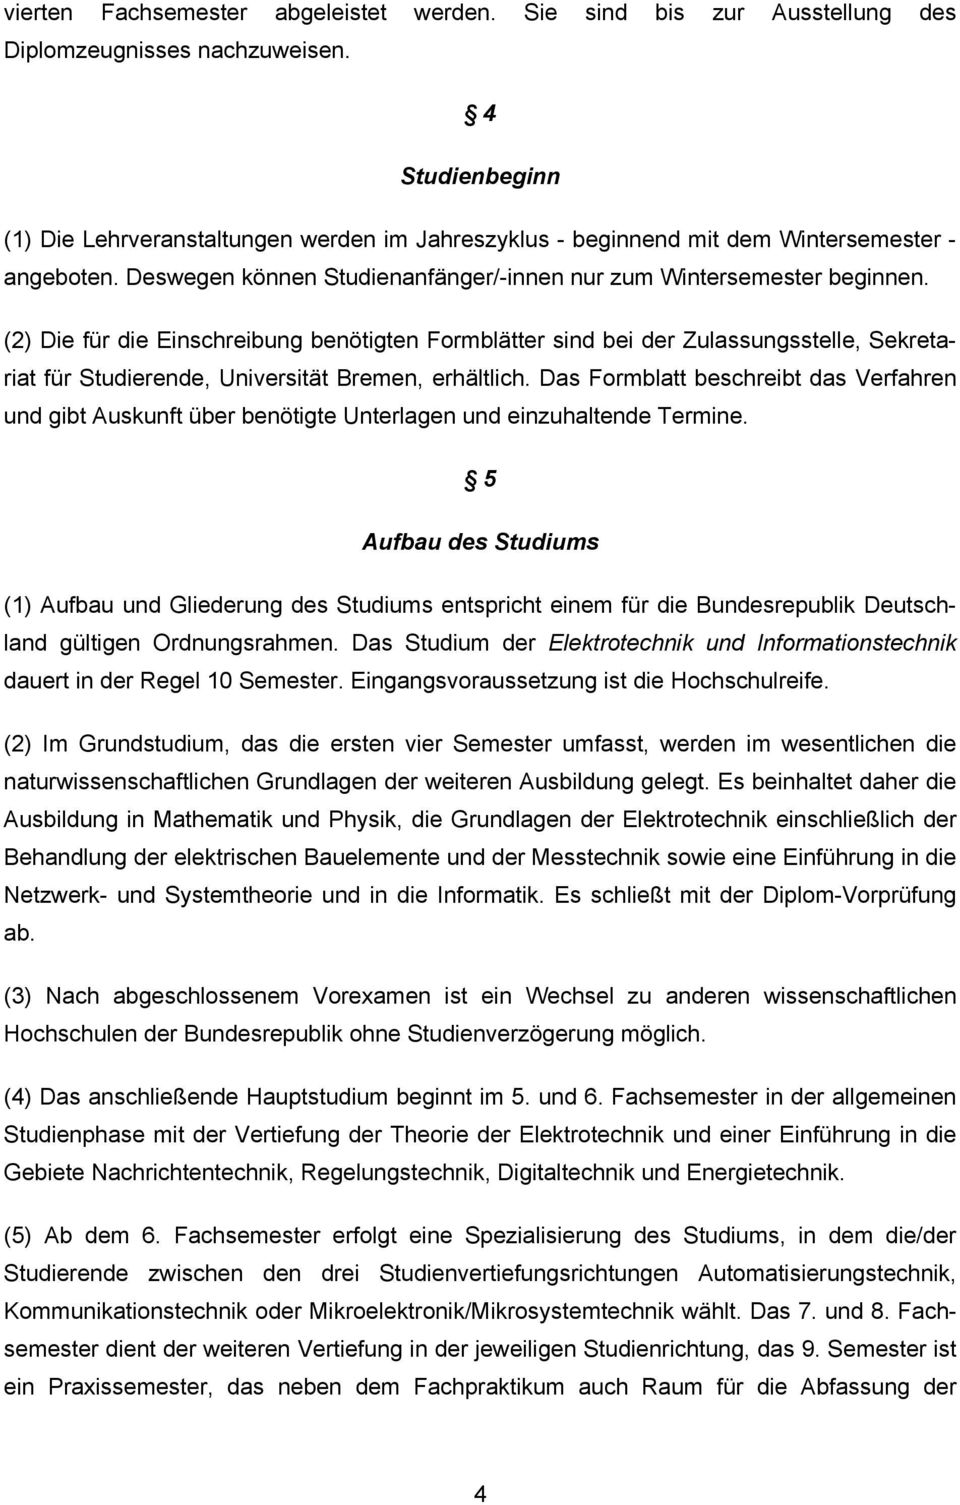 (2) Die für die Einschreibung benötigten Formblätter sind bei der Zulassungsstelle, Sekretariat für Studierende, Universität Bremen, erhältlich.